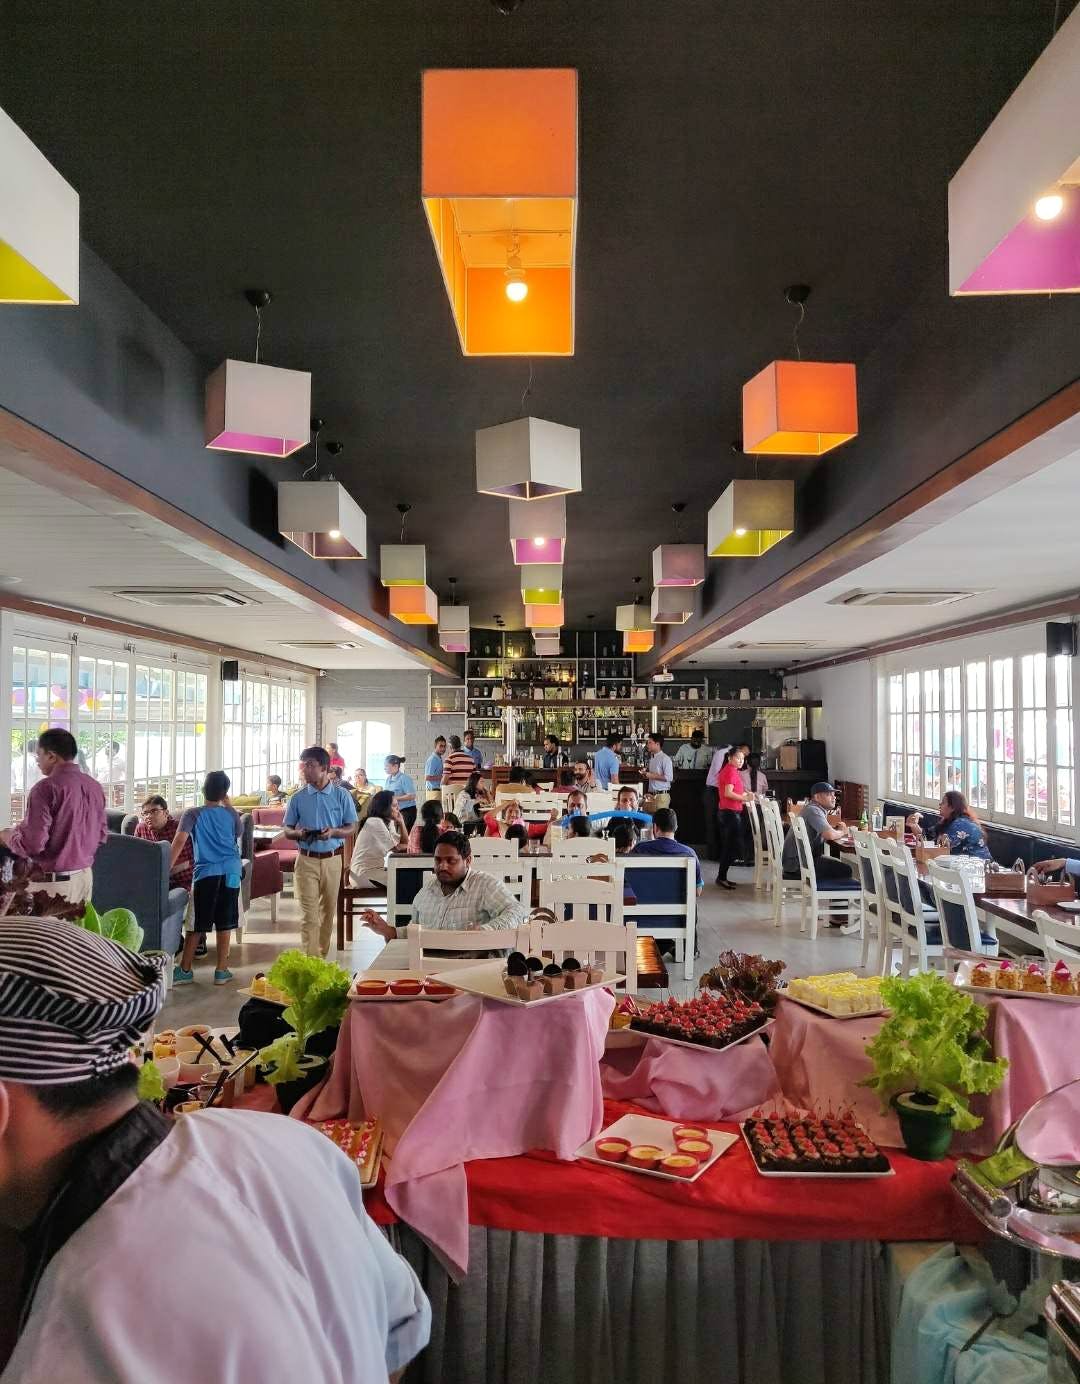 Restaurant,Building,Event,Food court,Interior design